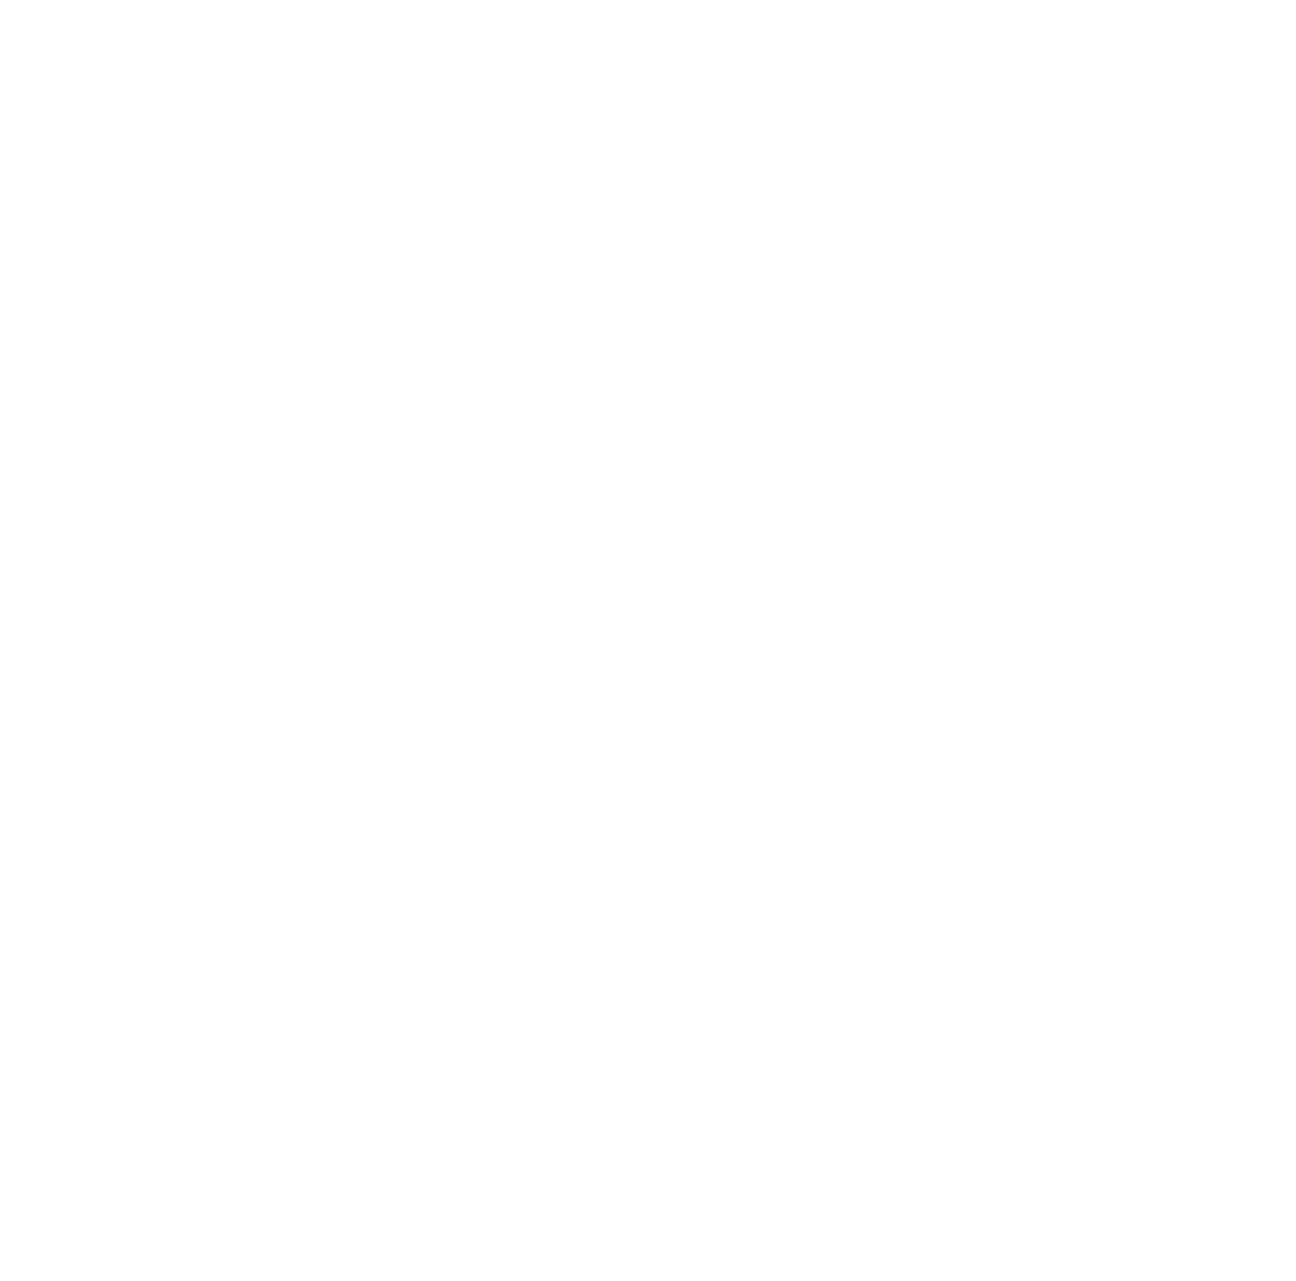 Home Movies logo